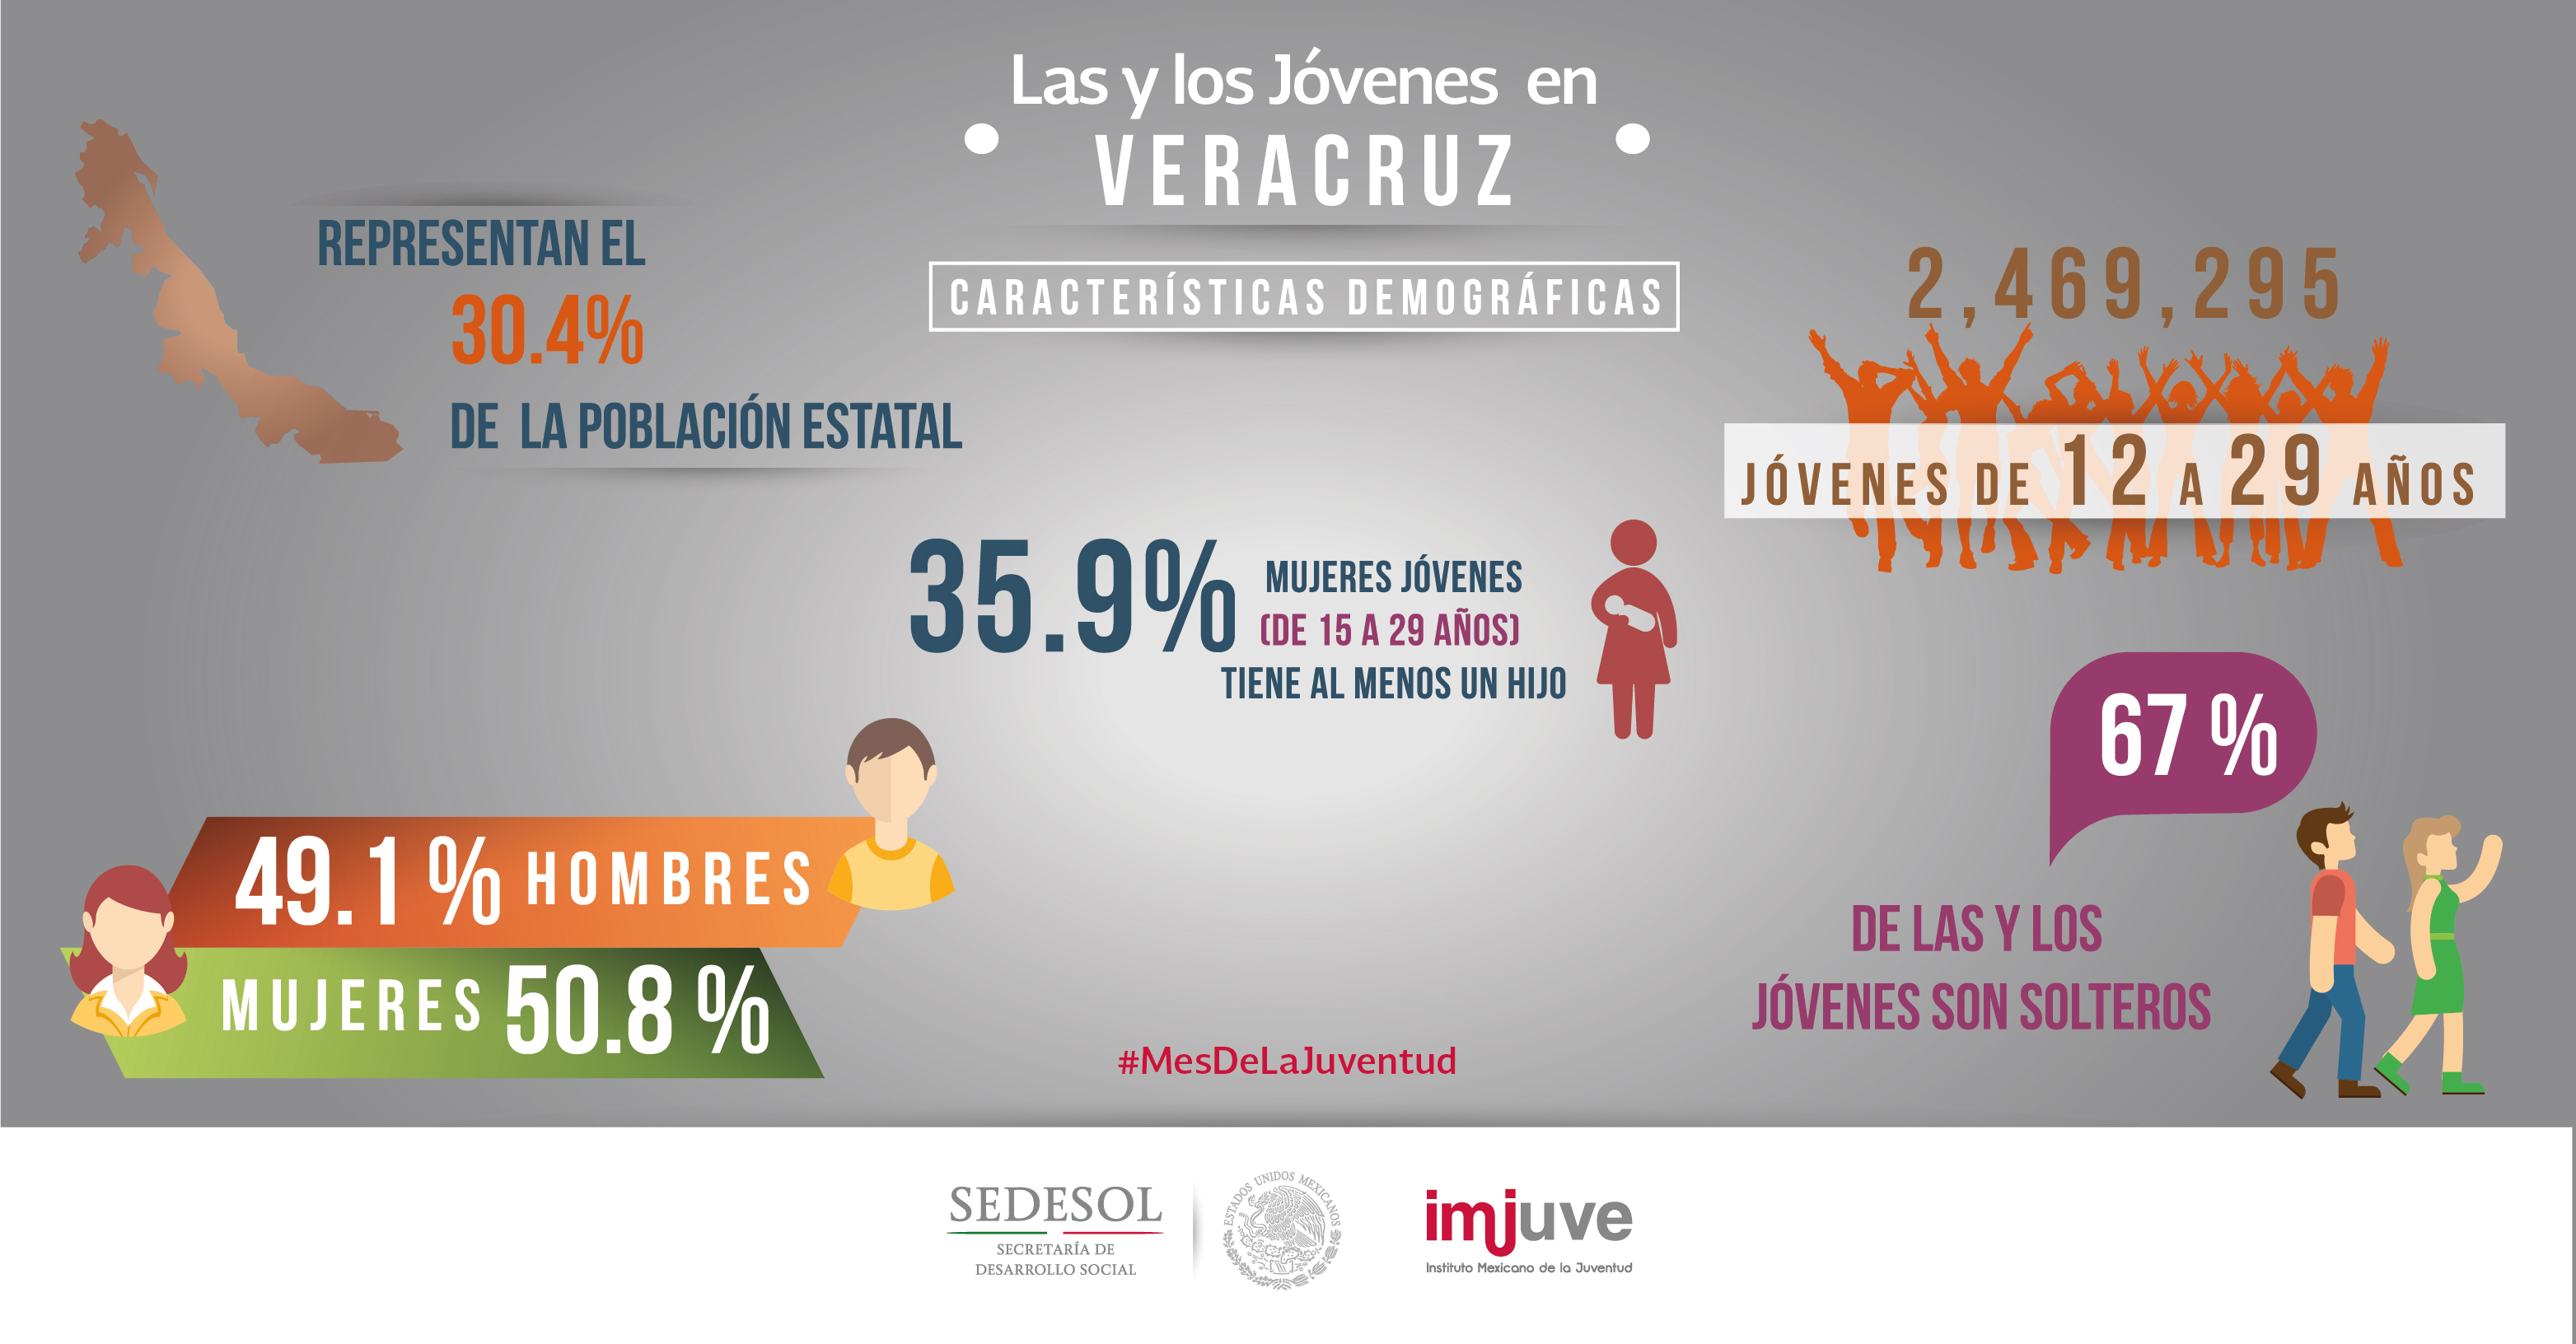 #SabíasQue  en Veracruz el 79.6% de los jóvenes está afiliado a algún servicio de salud público.